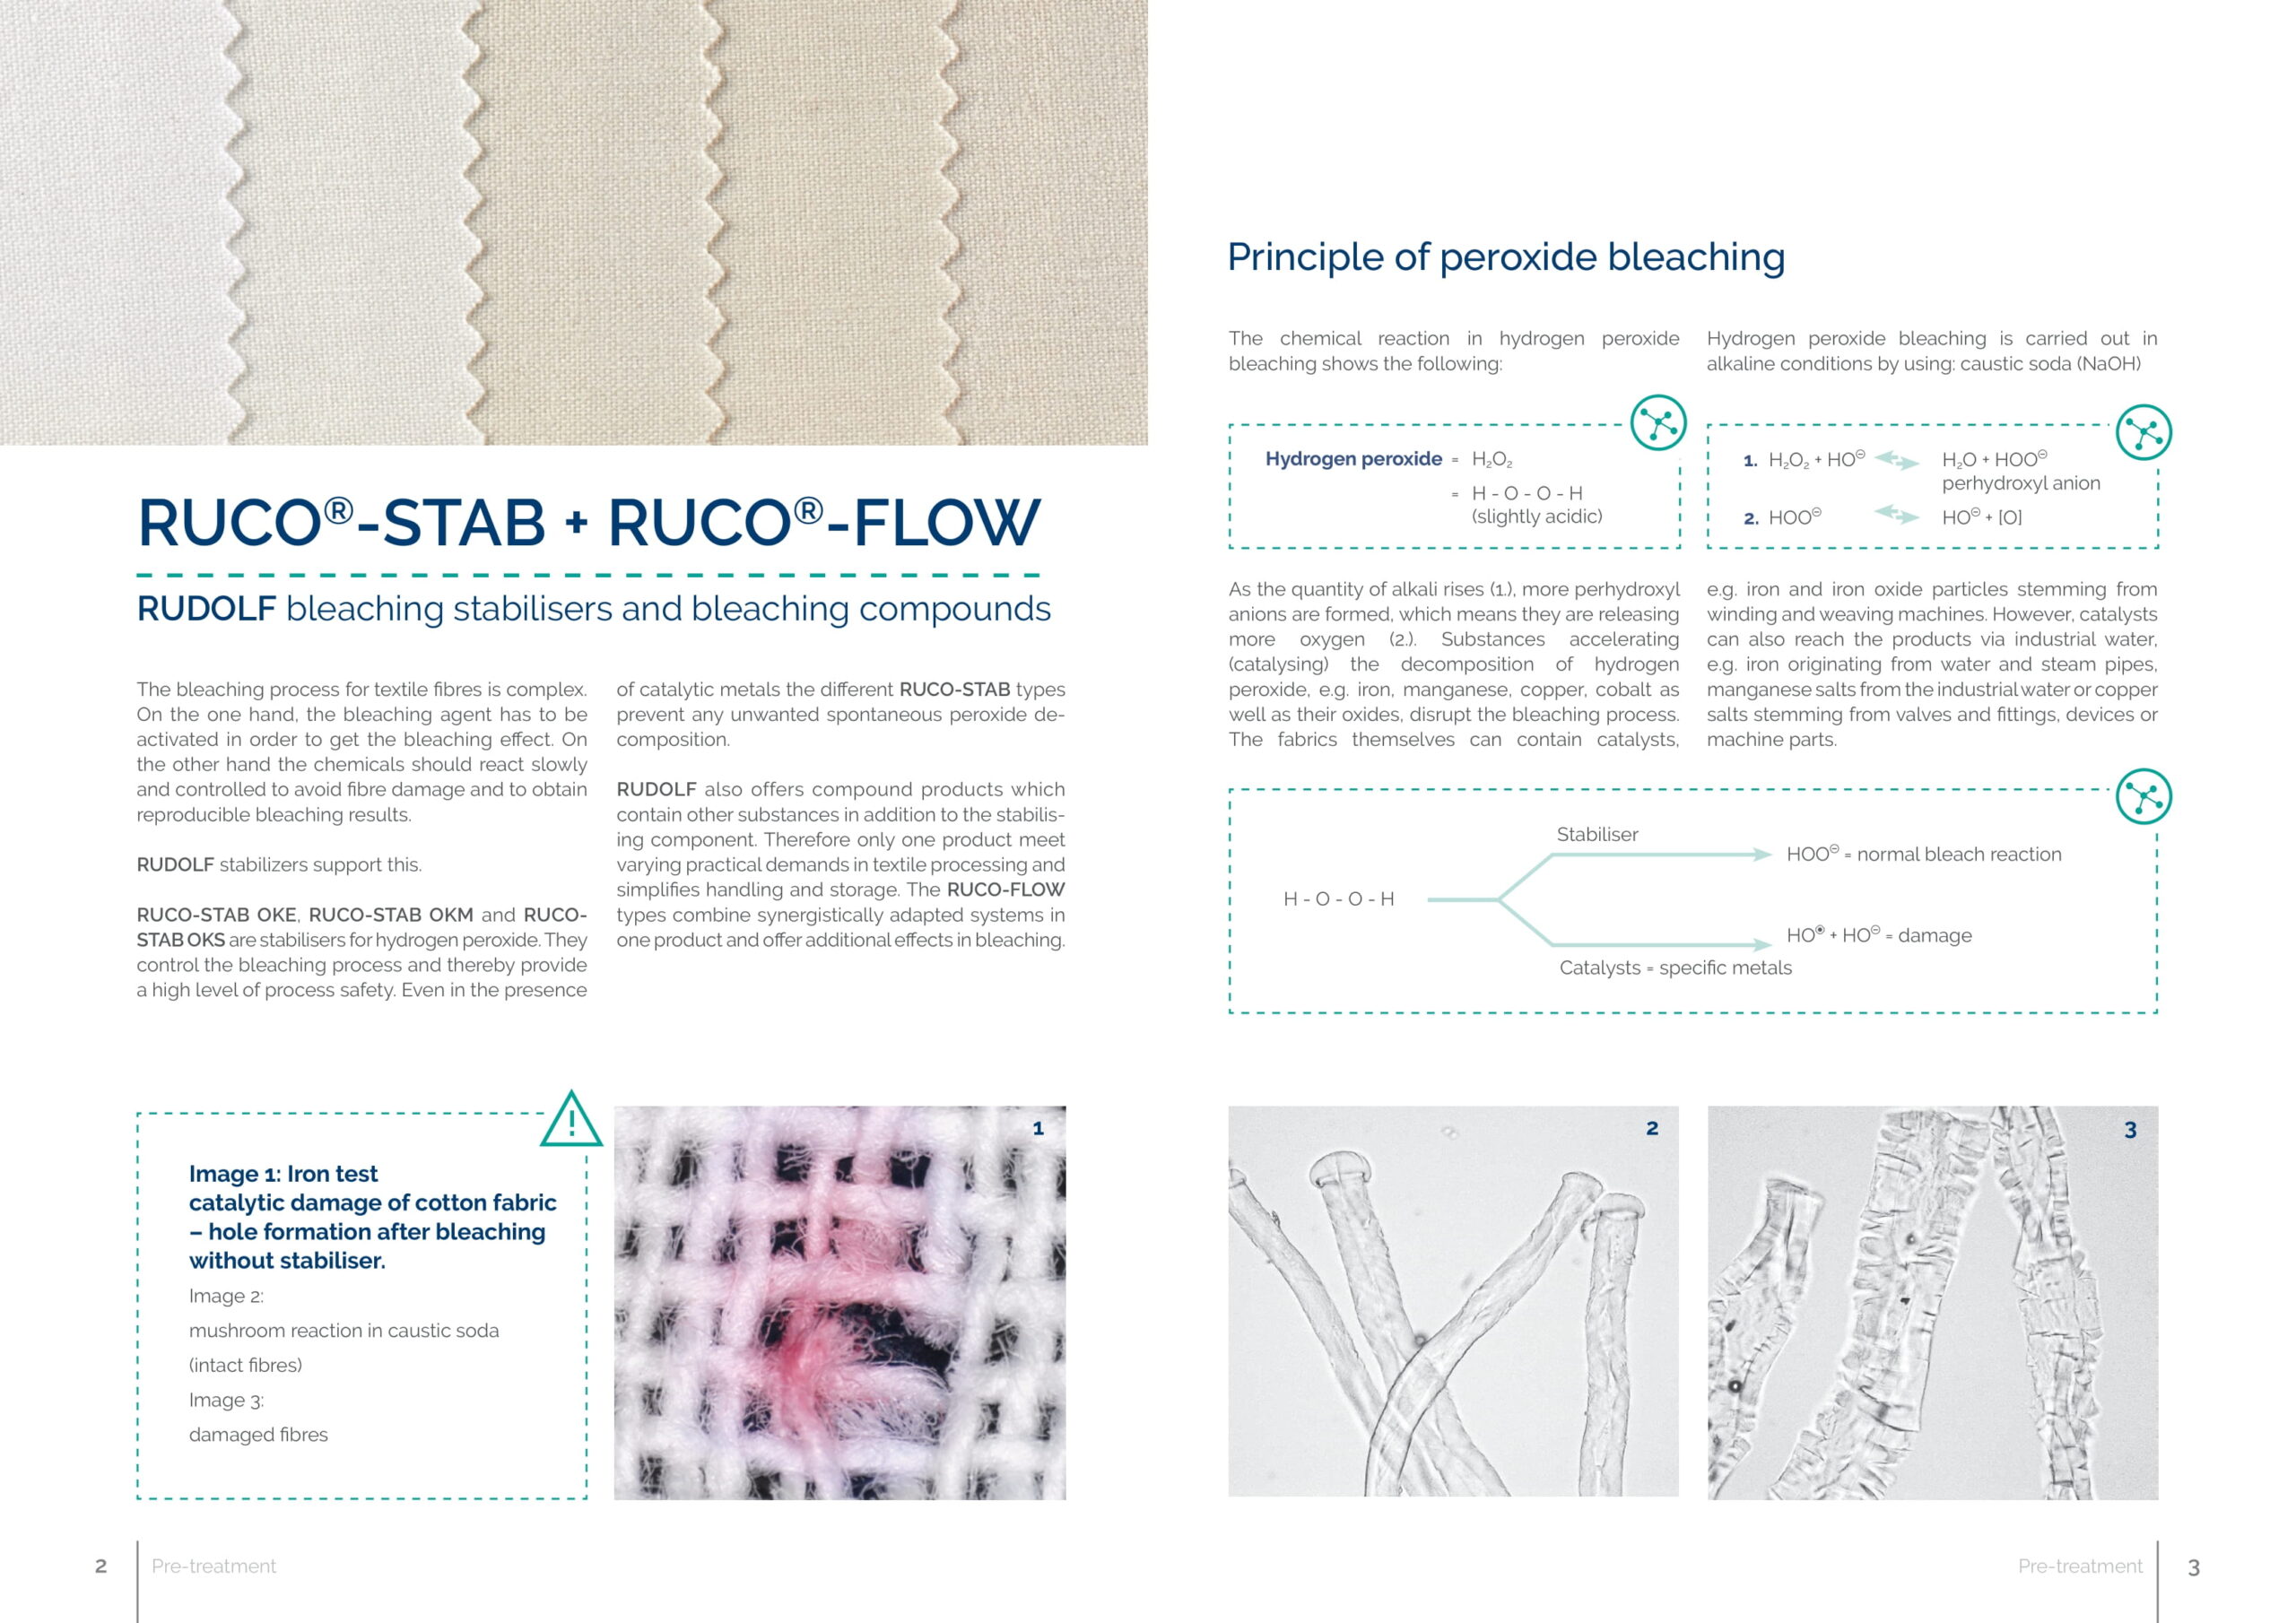 ri2019-13_ruco-stab_ruco-flow_en-2